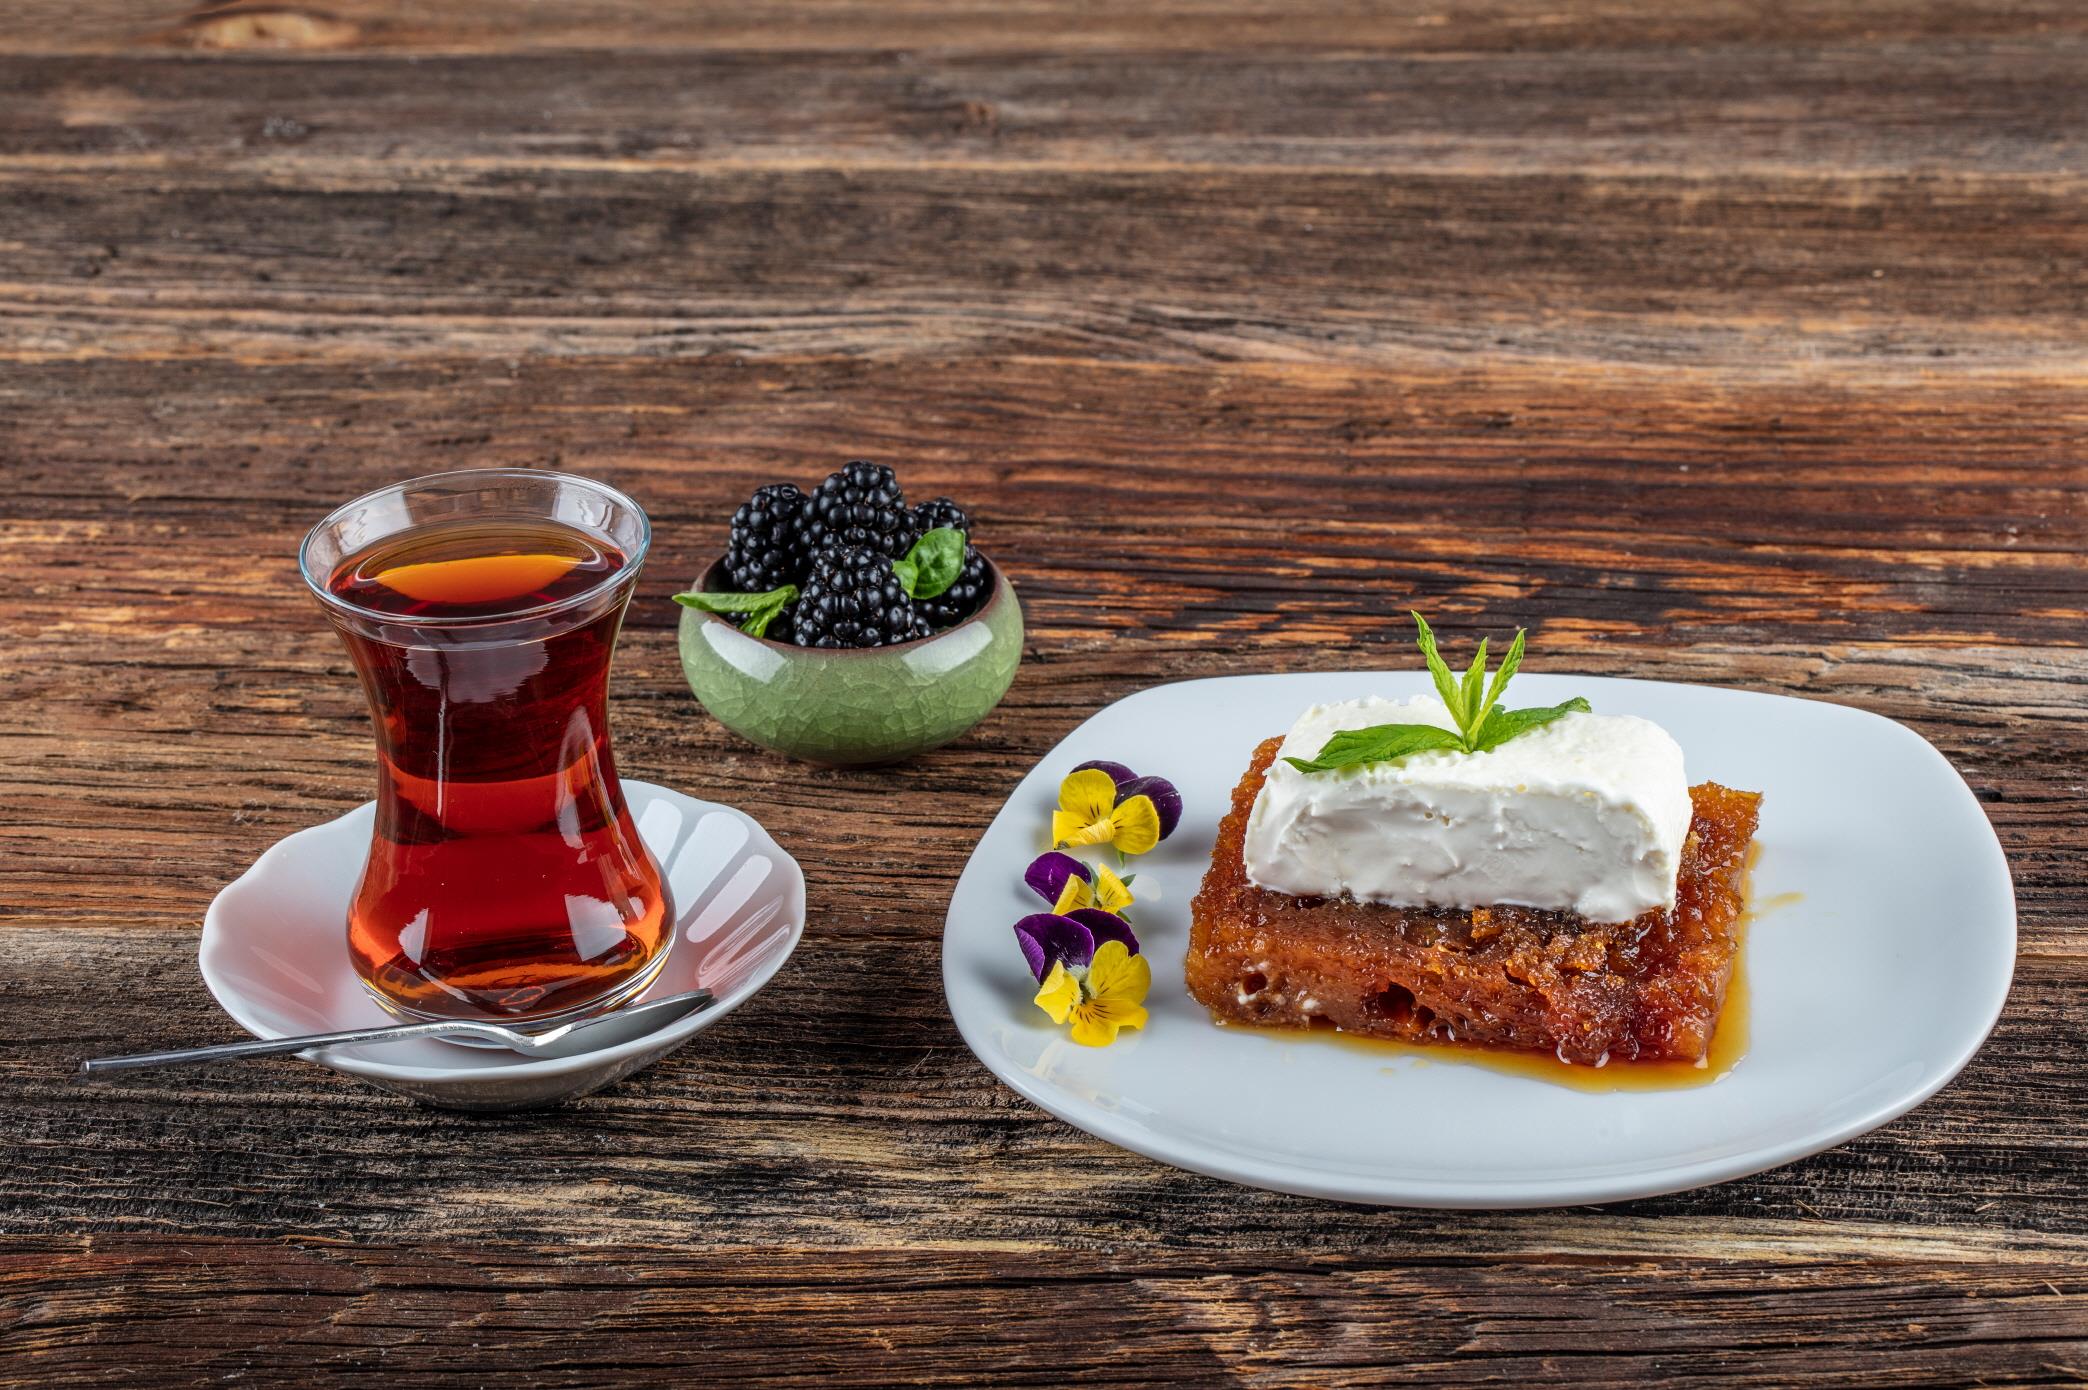 터키식 디저트  Turkish dessert